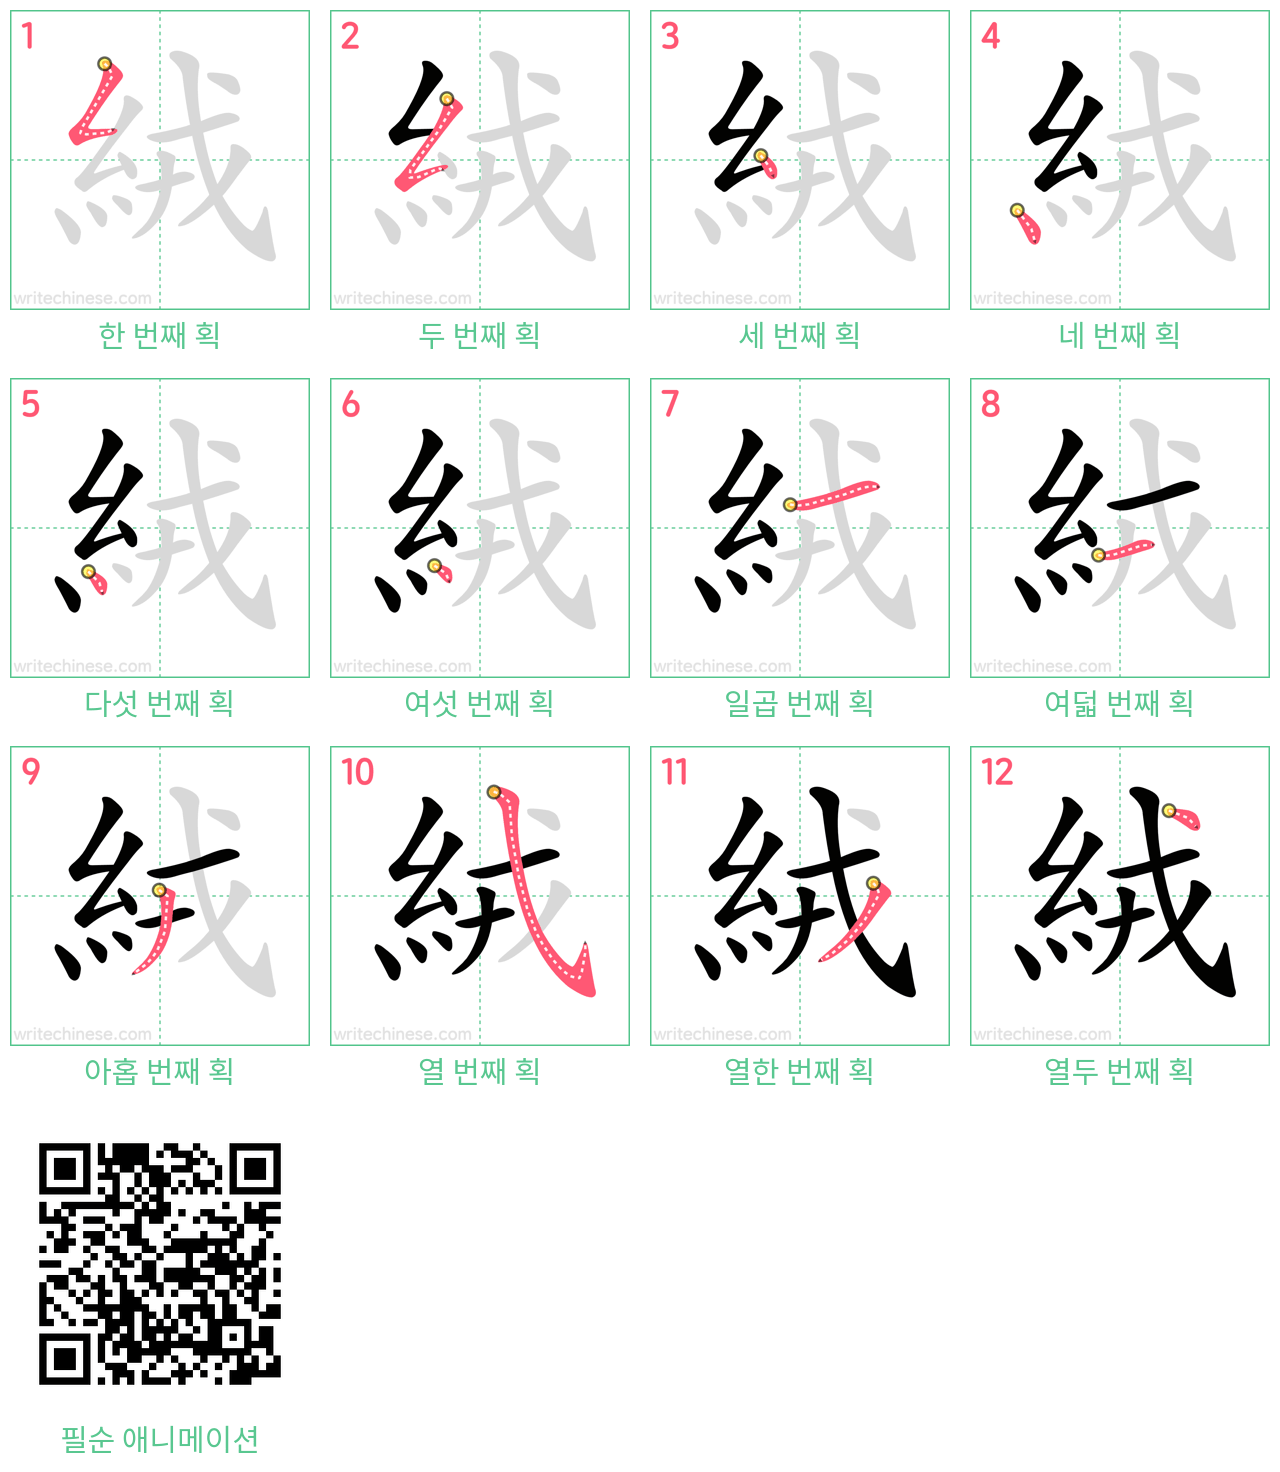 絨 step-by-step stroke order diagrams